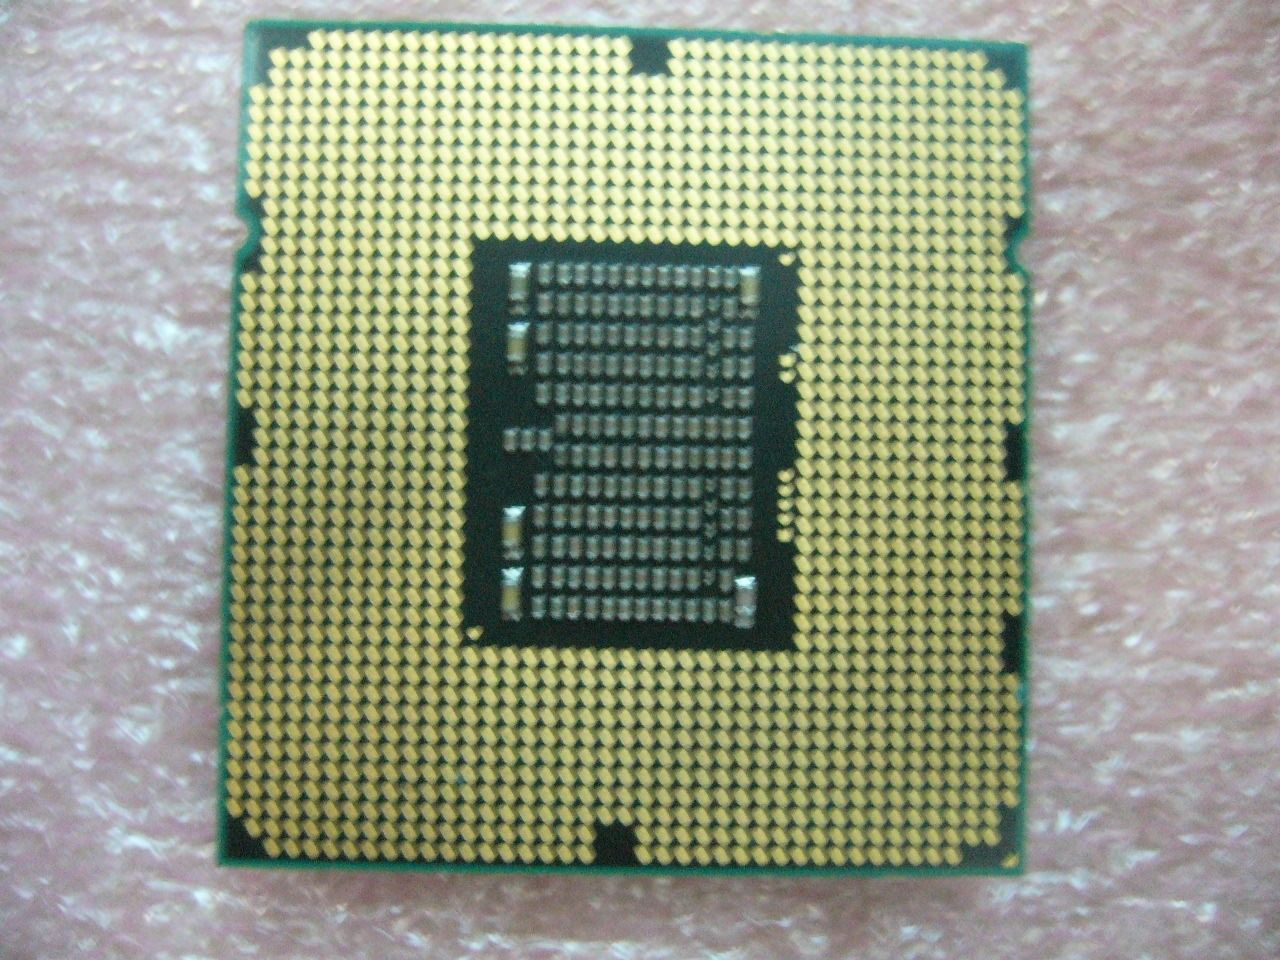 QTY 1x INTEL Quad-Cores ES CPU E5606 2.13GHZ/8MB 4.8GT/s QPI LGA1366 Q5BB - Click Image to Close